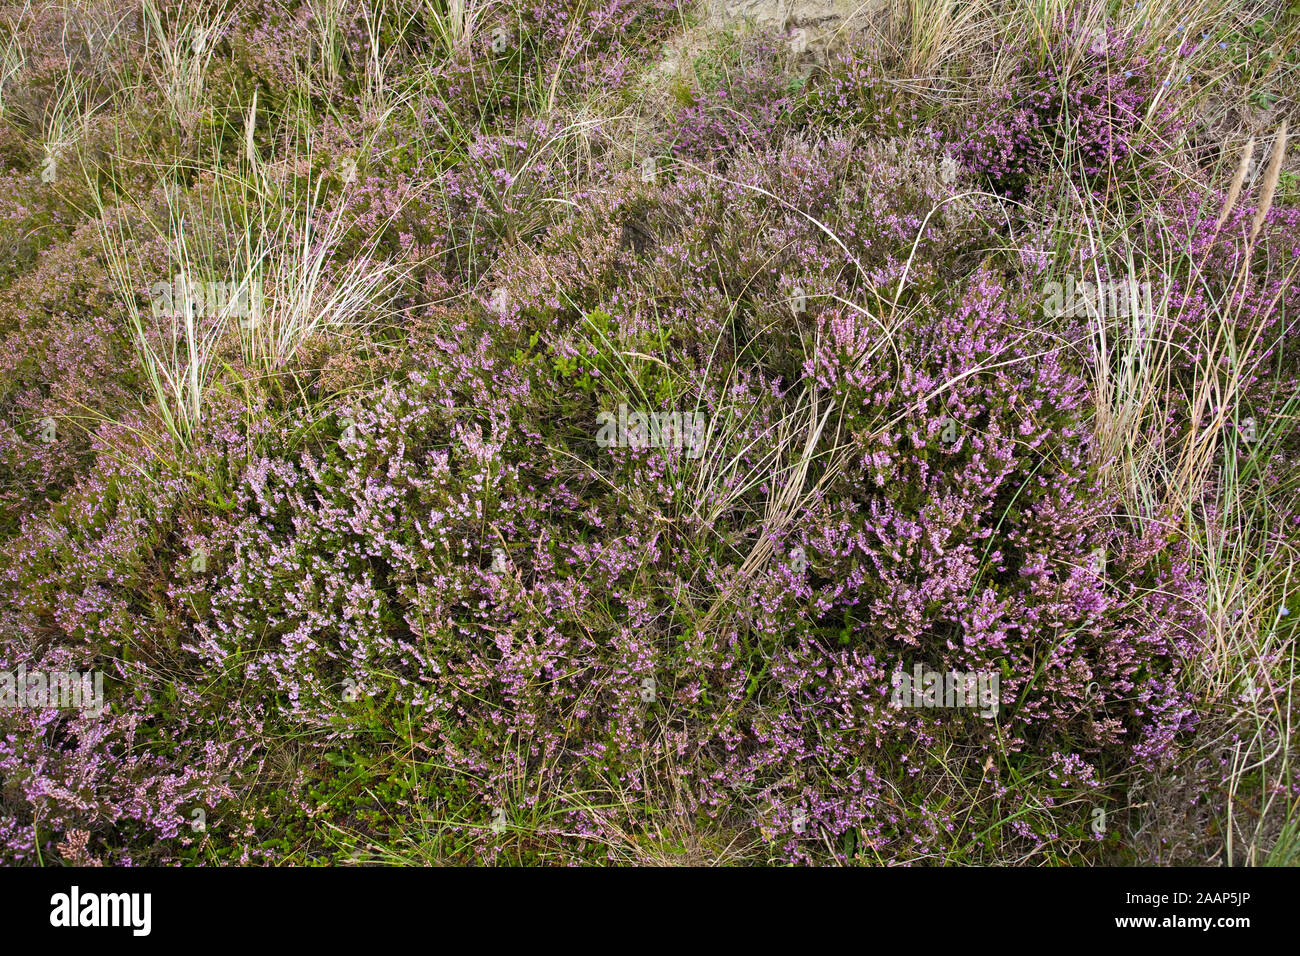 Blühende Heide im Naturschutzgebiet Braderuper Heide am Wattenmeer auf Sylt Stock Photo